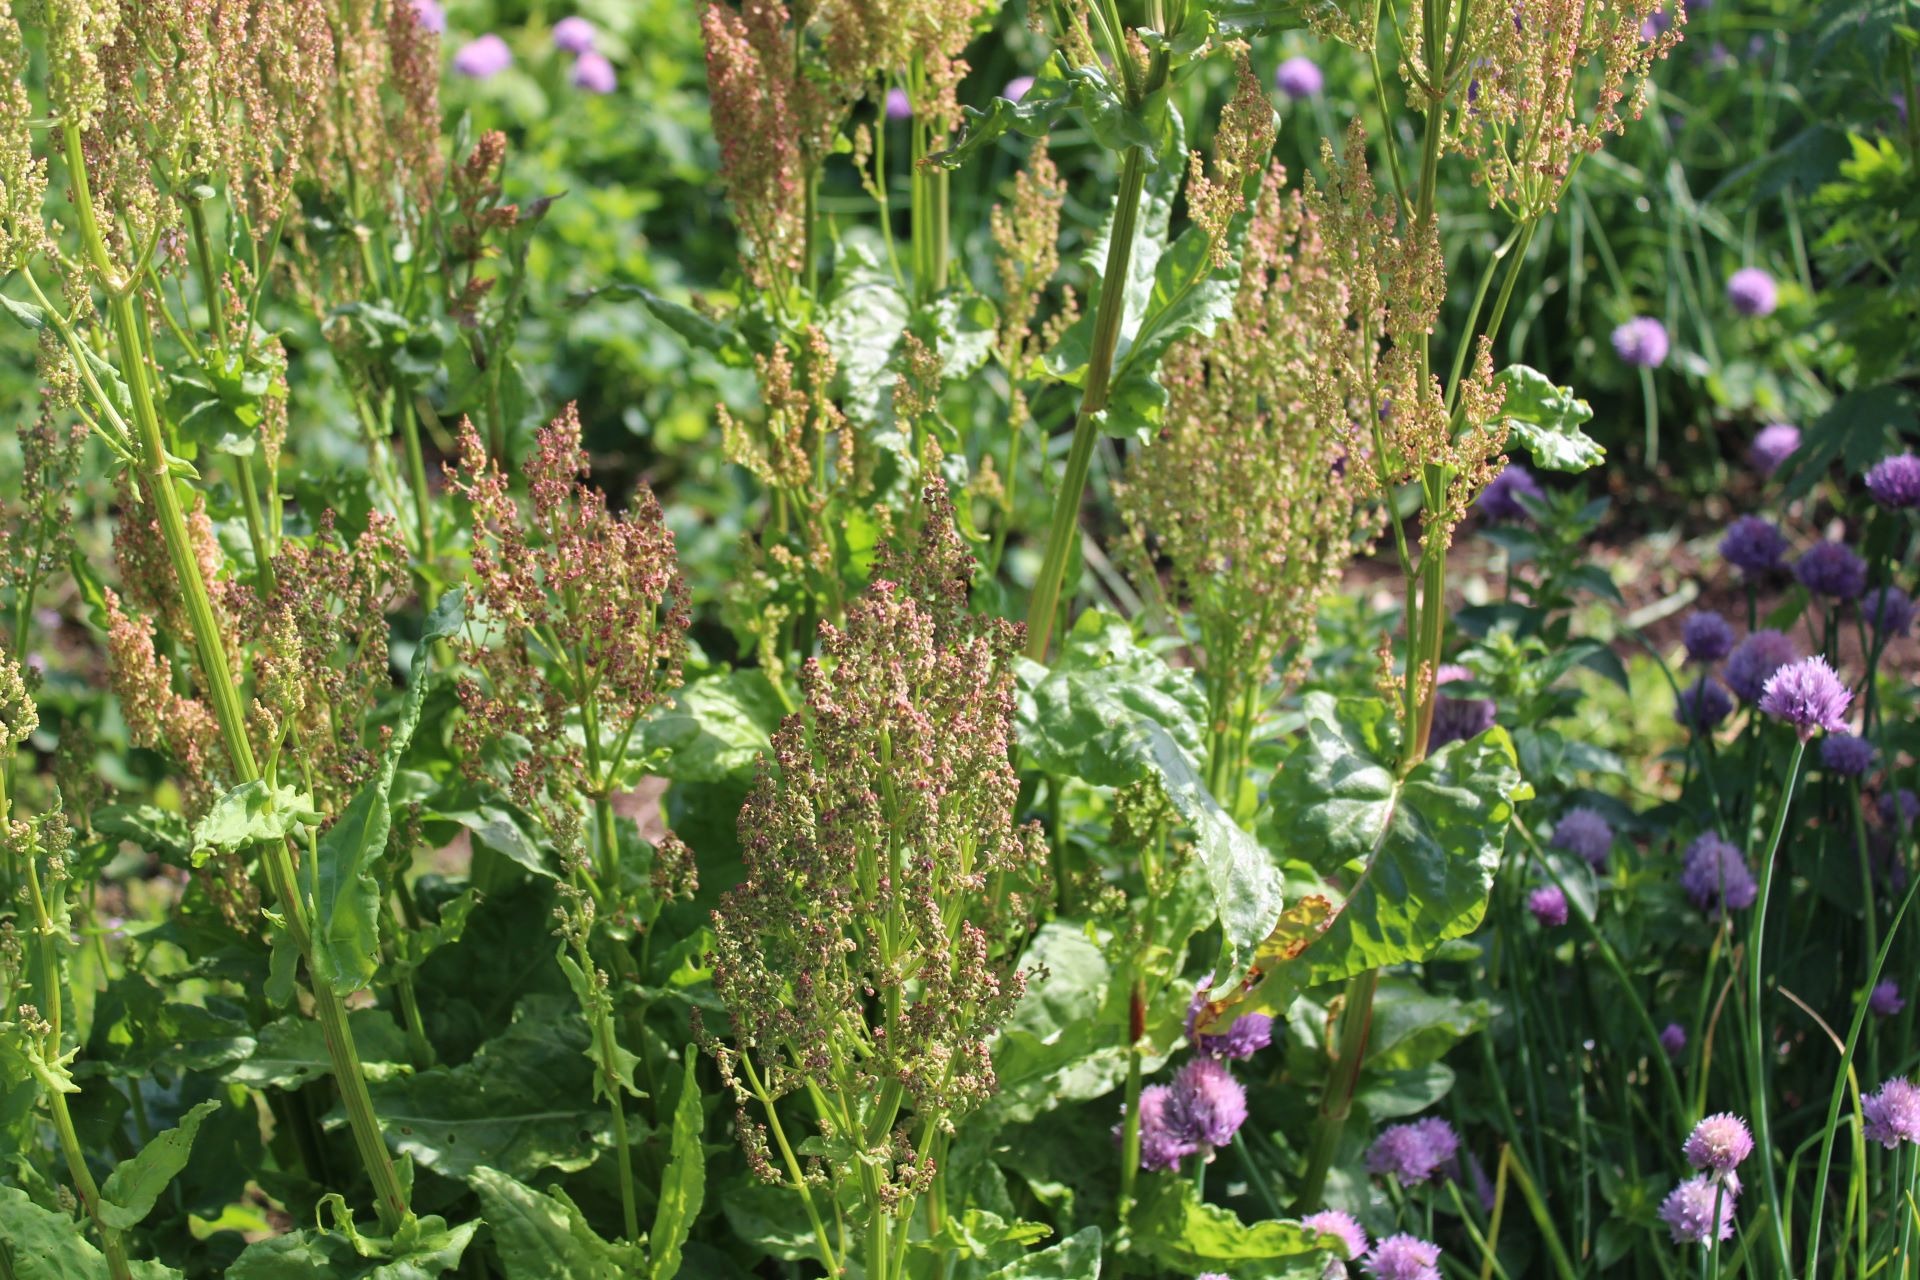 Dunkelrot blühender Sauerampfer links neben Schnittlauch mit violetten Blüten. Der Sauerampfer steht im Sonnenlicht und wirft seinen Schatten auf den Schnittlauch. Im Hintergrund weitere grüne Pflanzen mit lilafarbenen Blüten, unscharf.